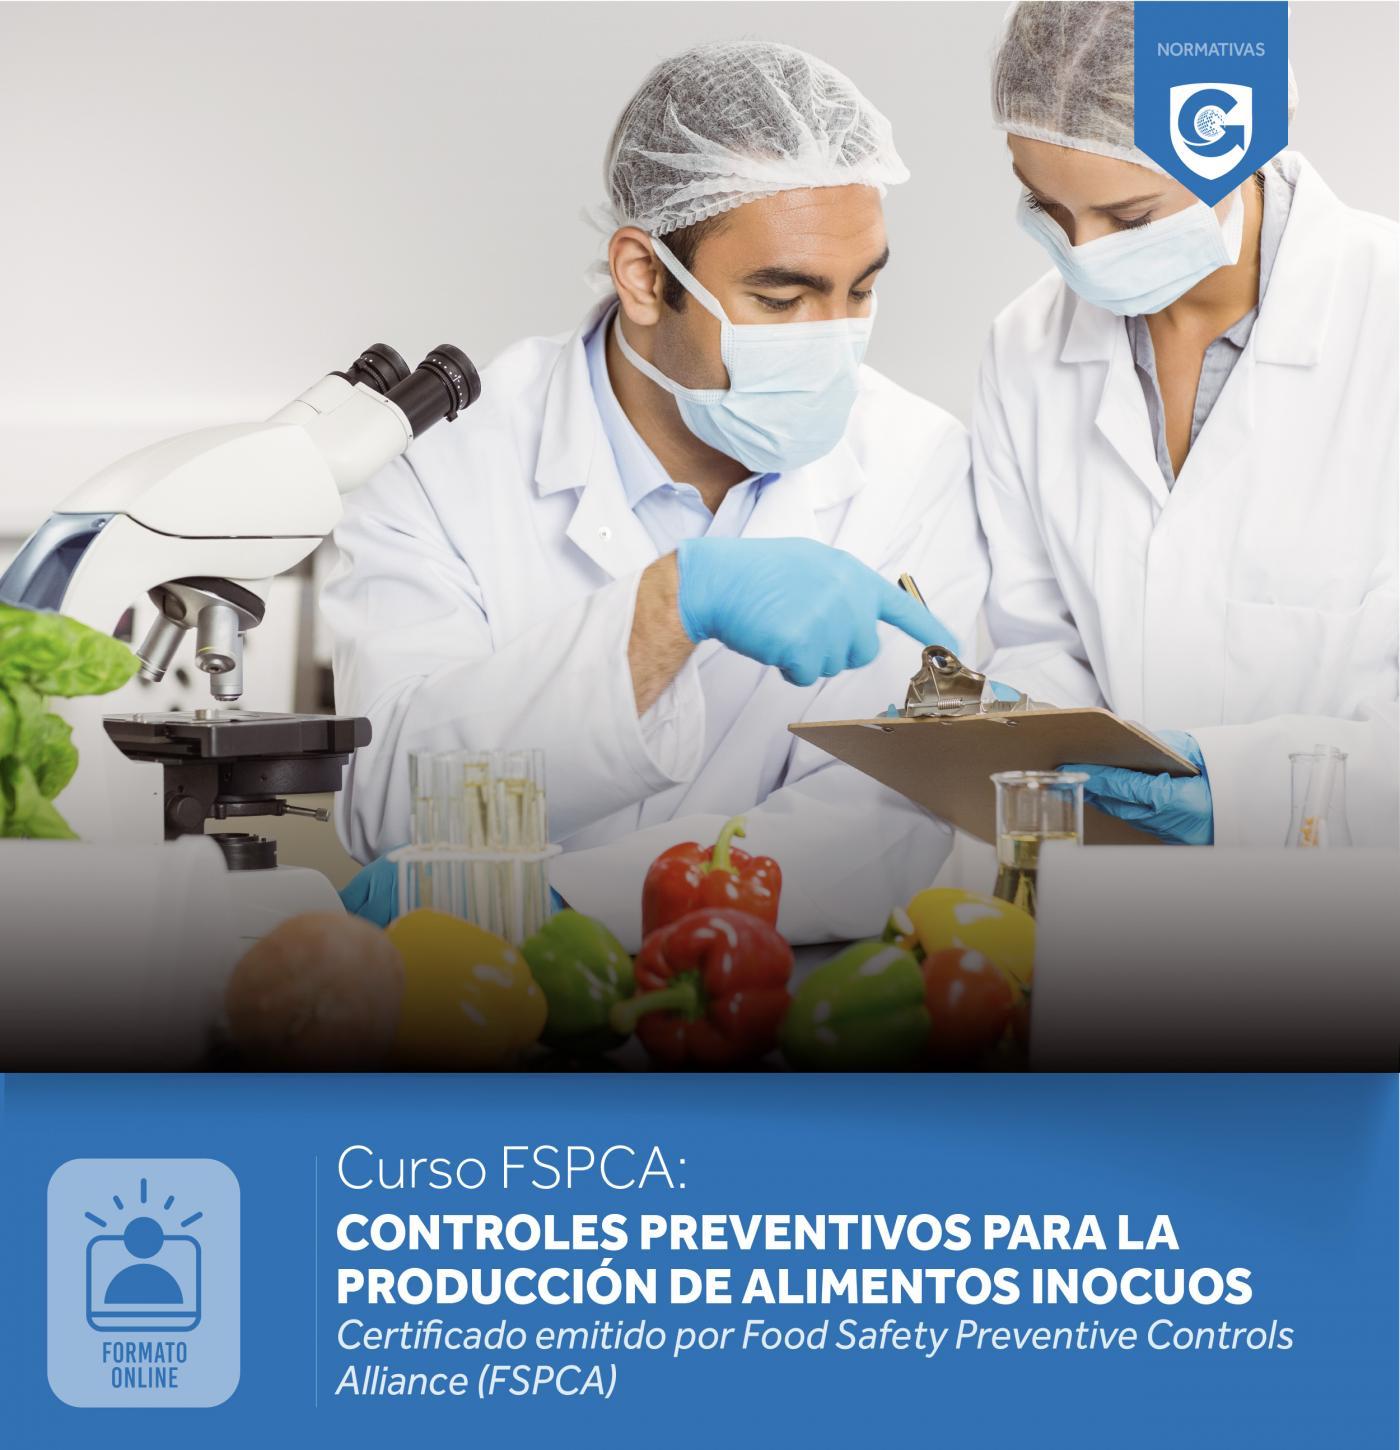 Curso FSPCA: Controles preventivos para la producción de alimentos inocuos